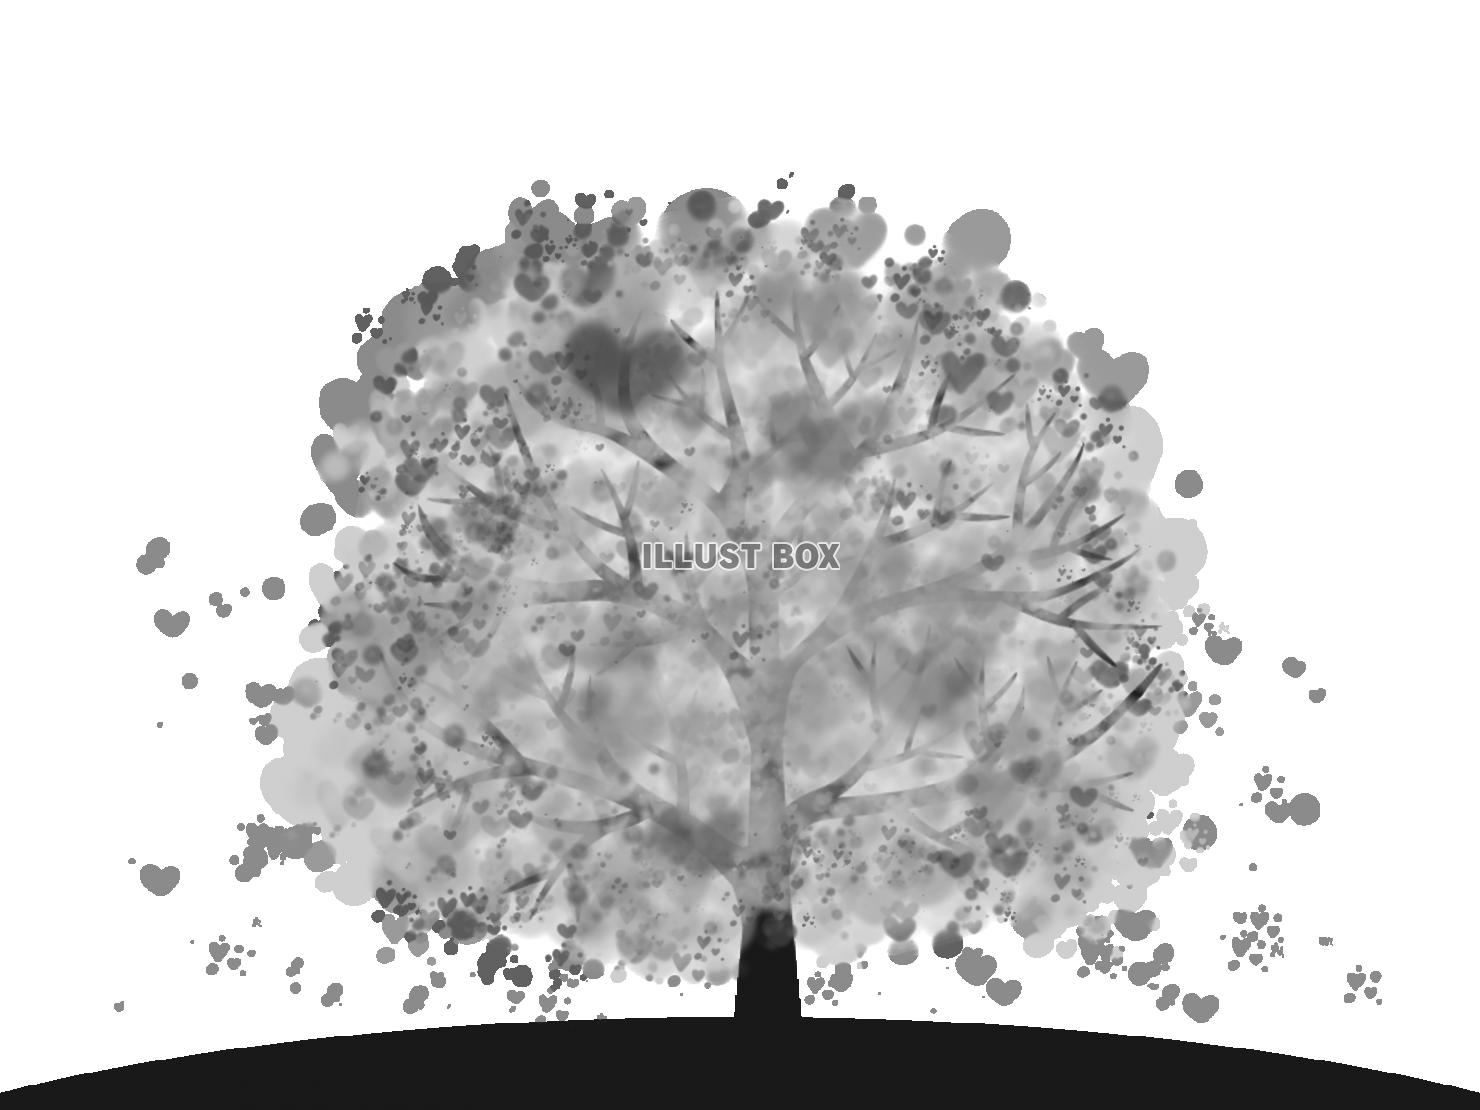 絵本風の「幻想的で綺麗なハートの咲く木」イラスト